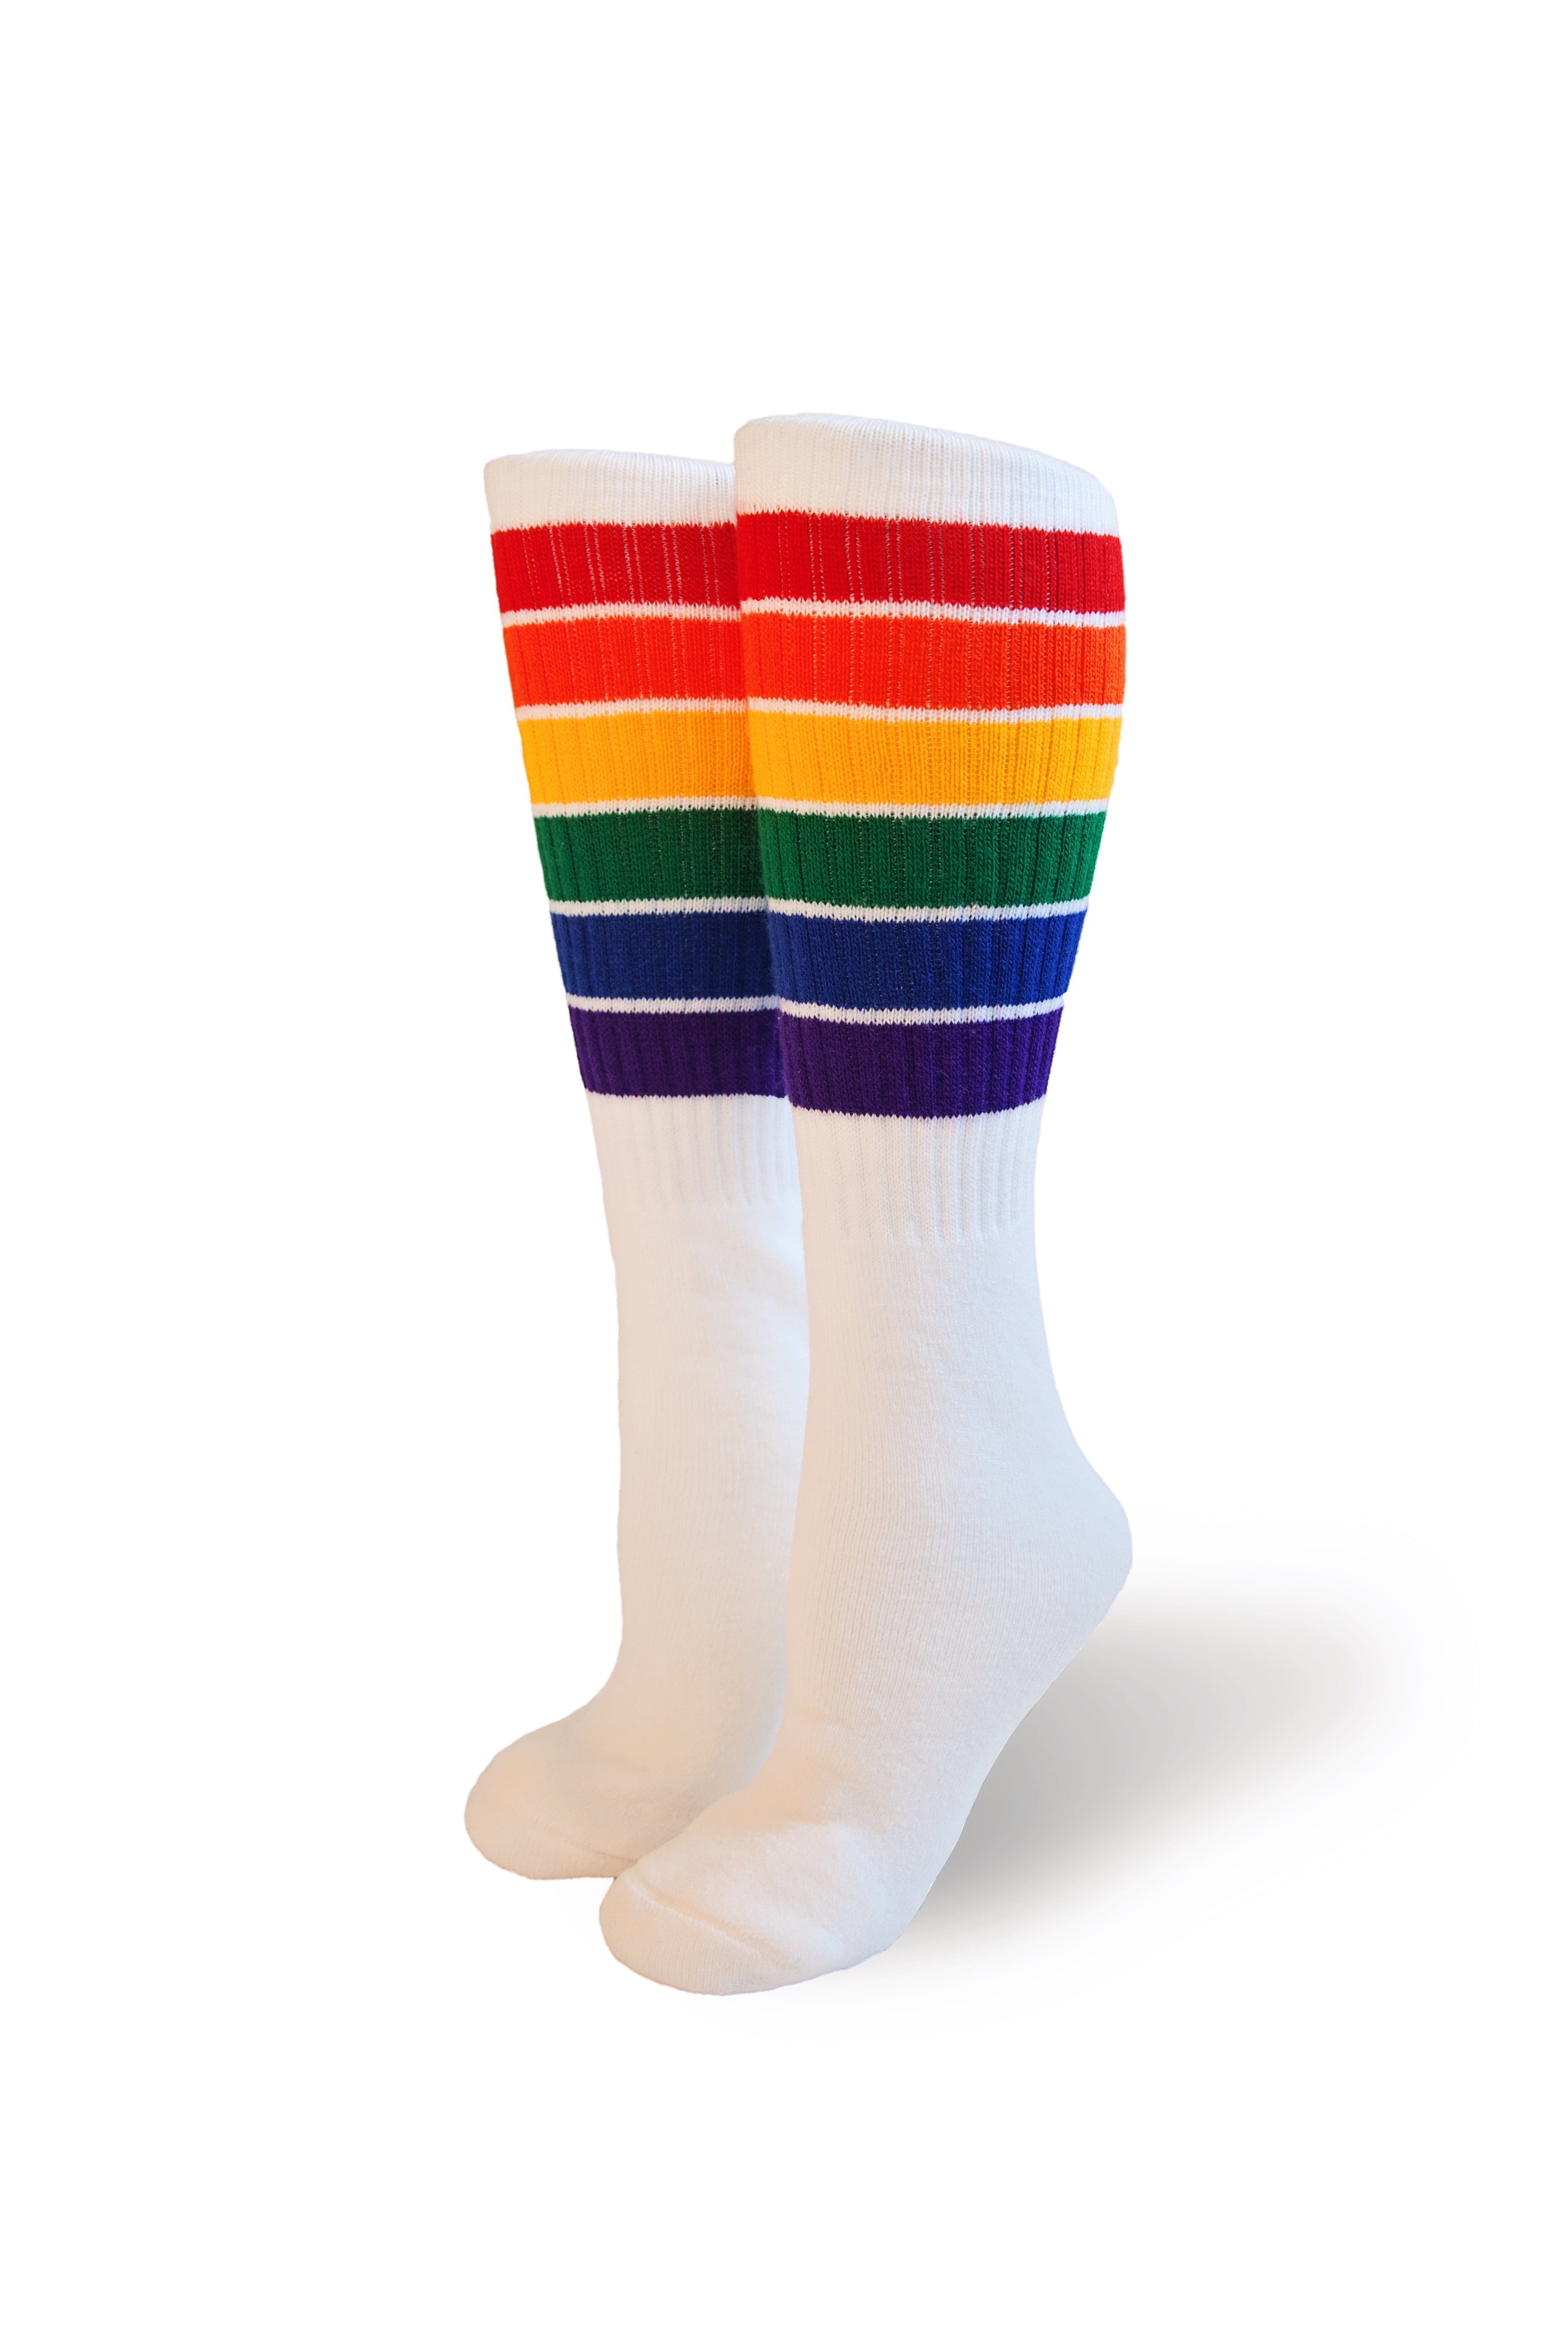 Knee High Pride Socks Rainbow Striped Tube Socks T8 22 